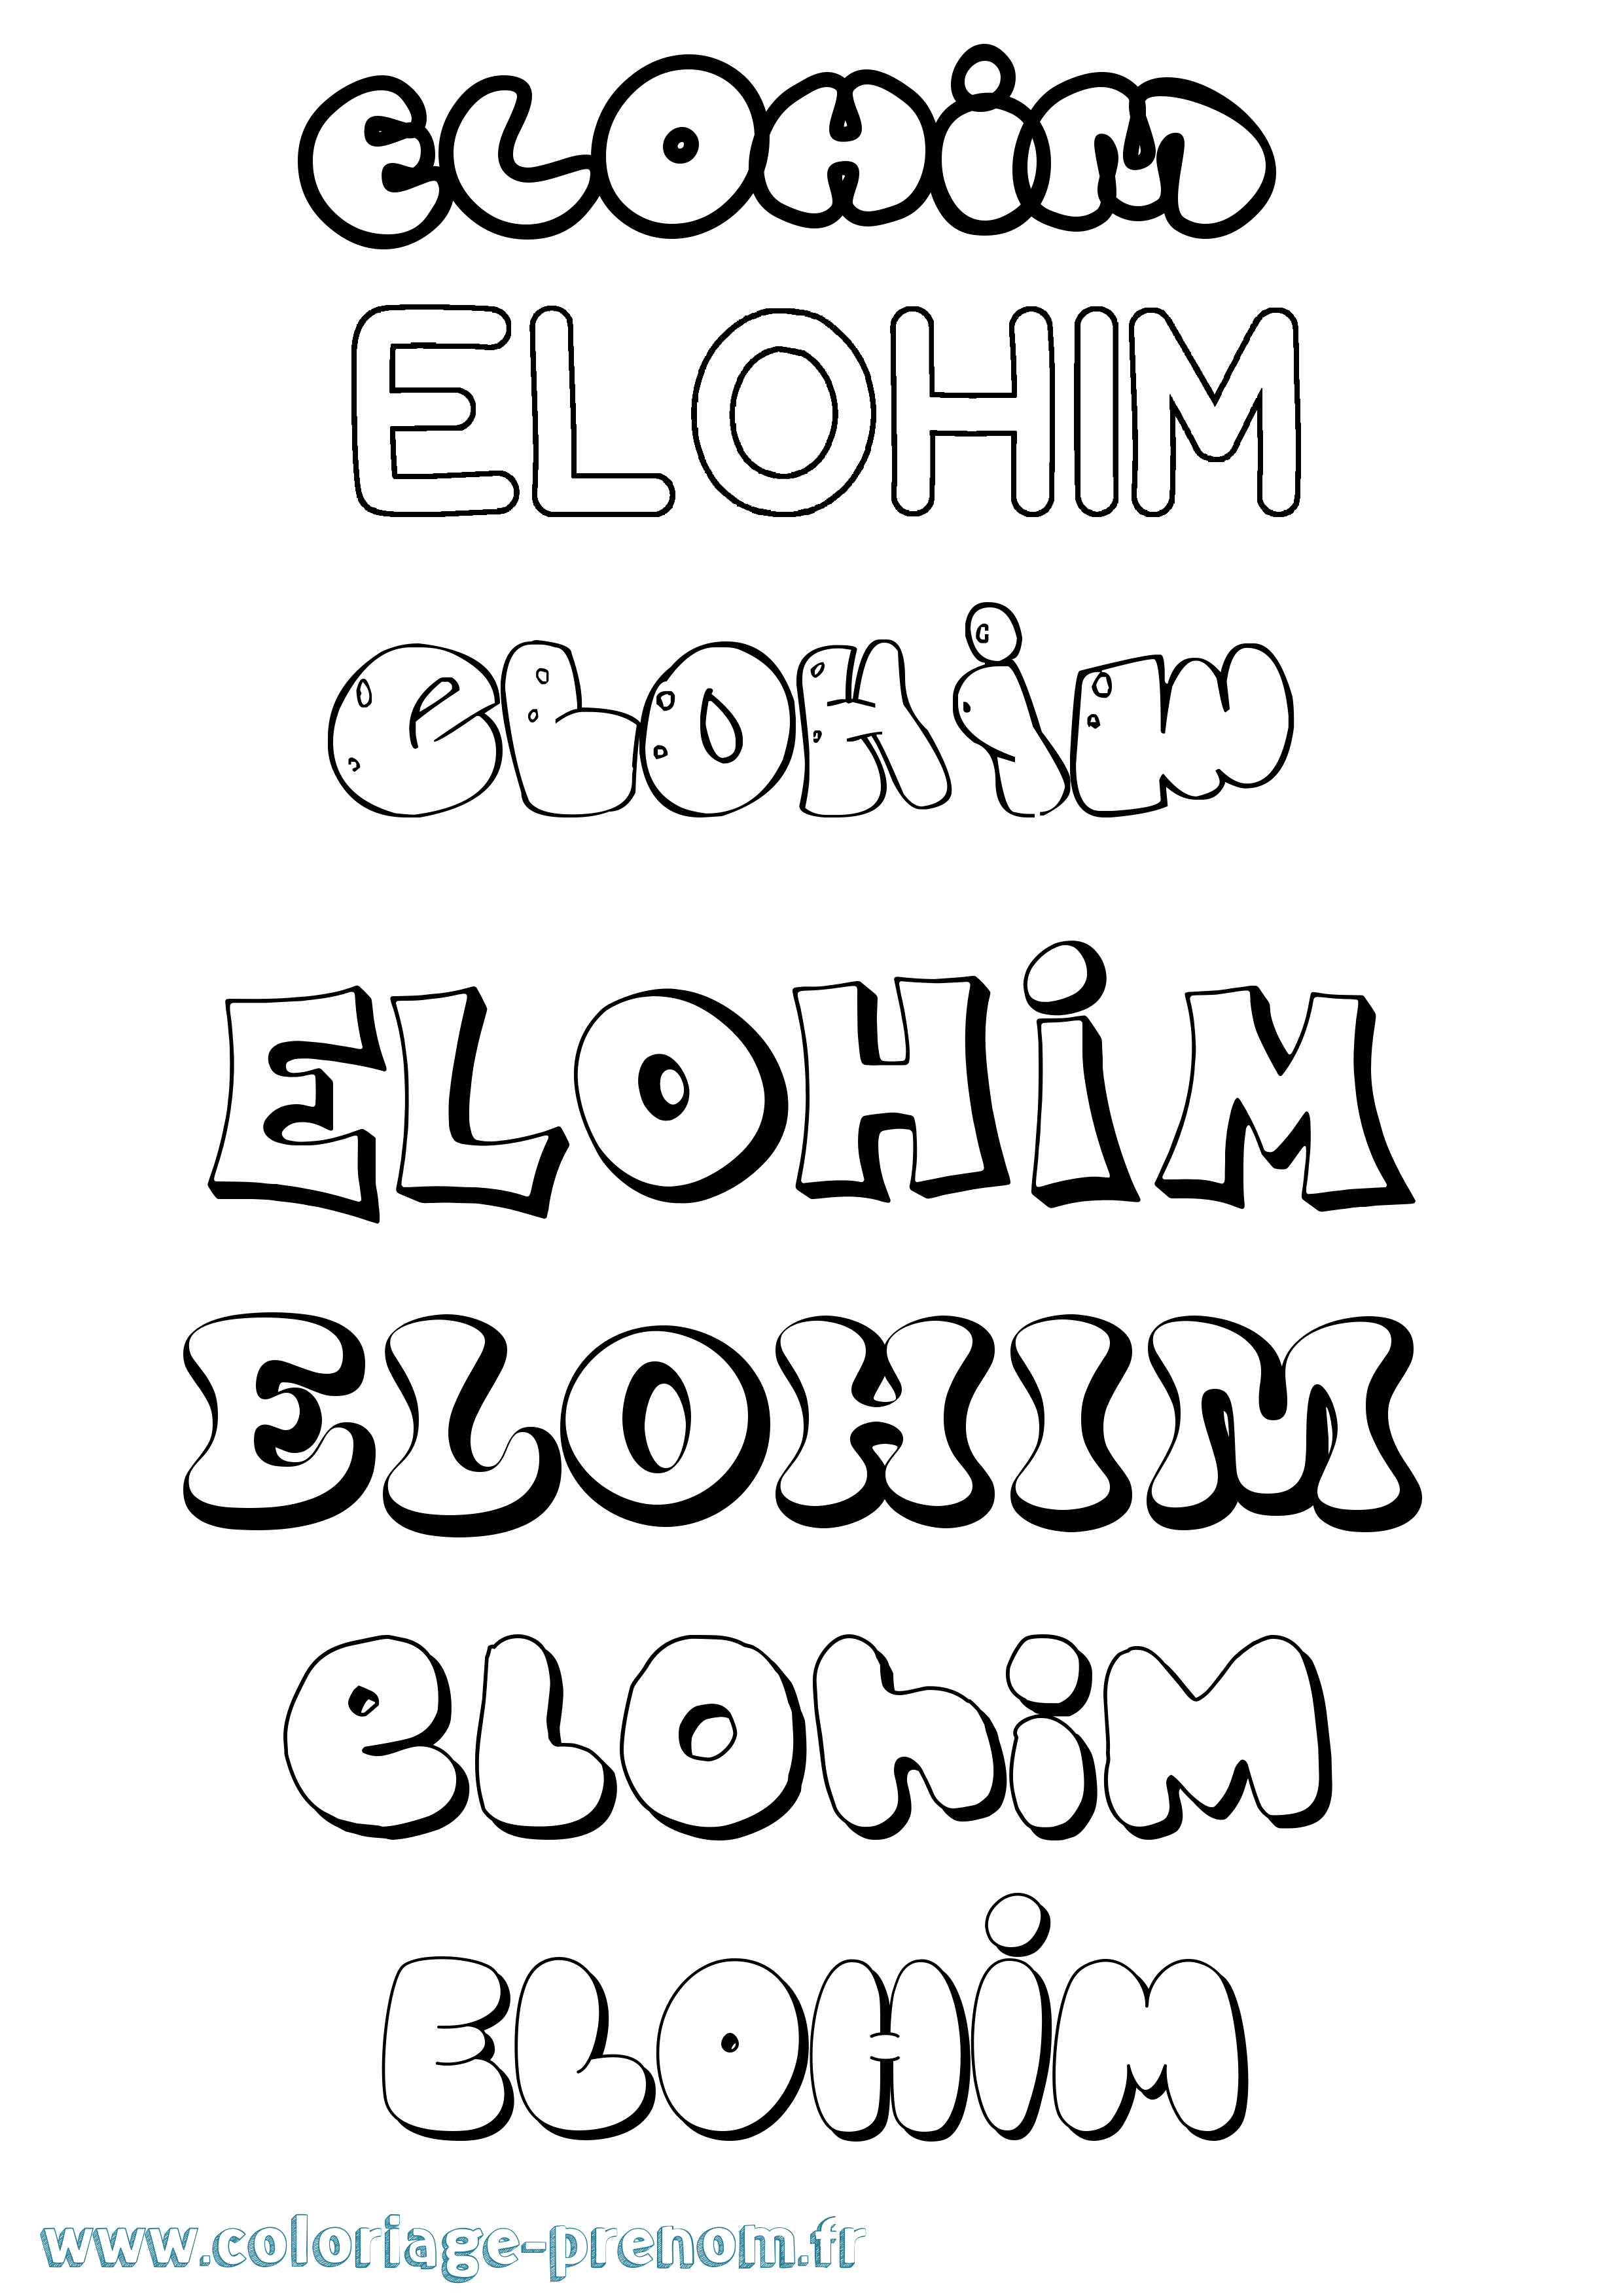 Coloriage prénom Elohim Bubble